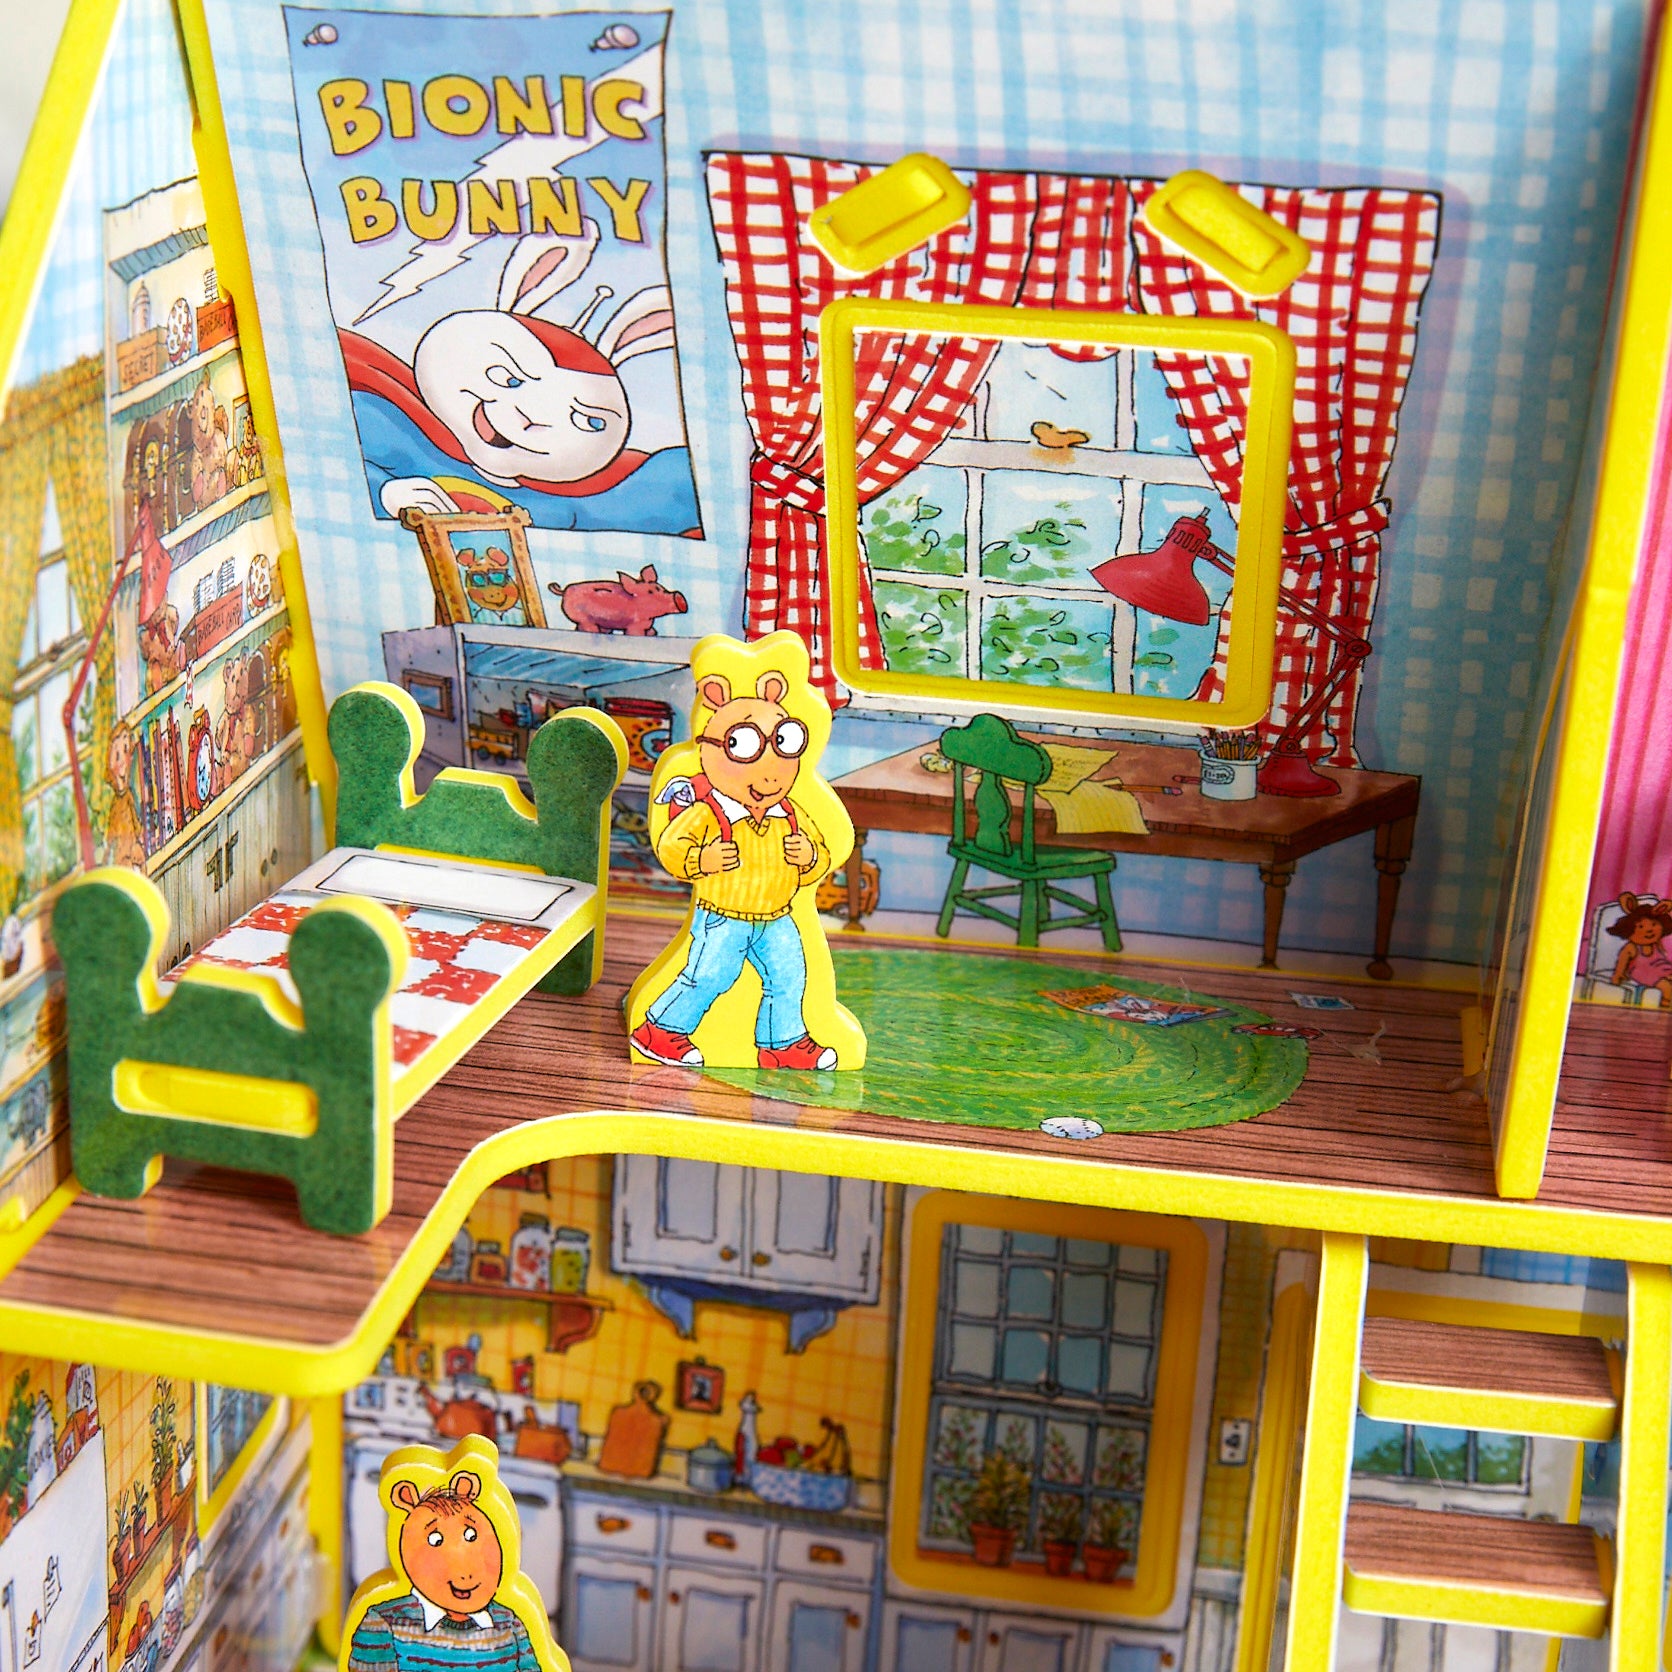 Arthur's Toy House